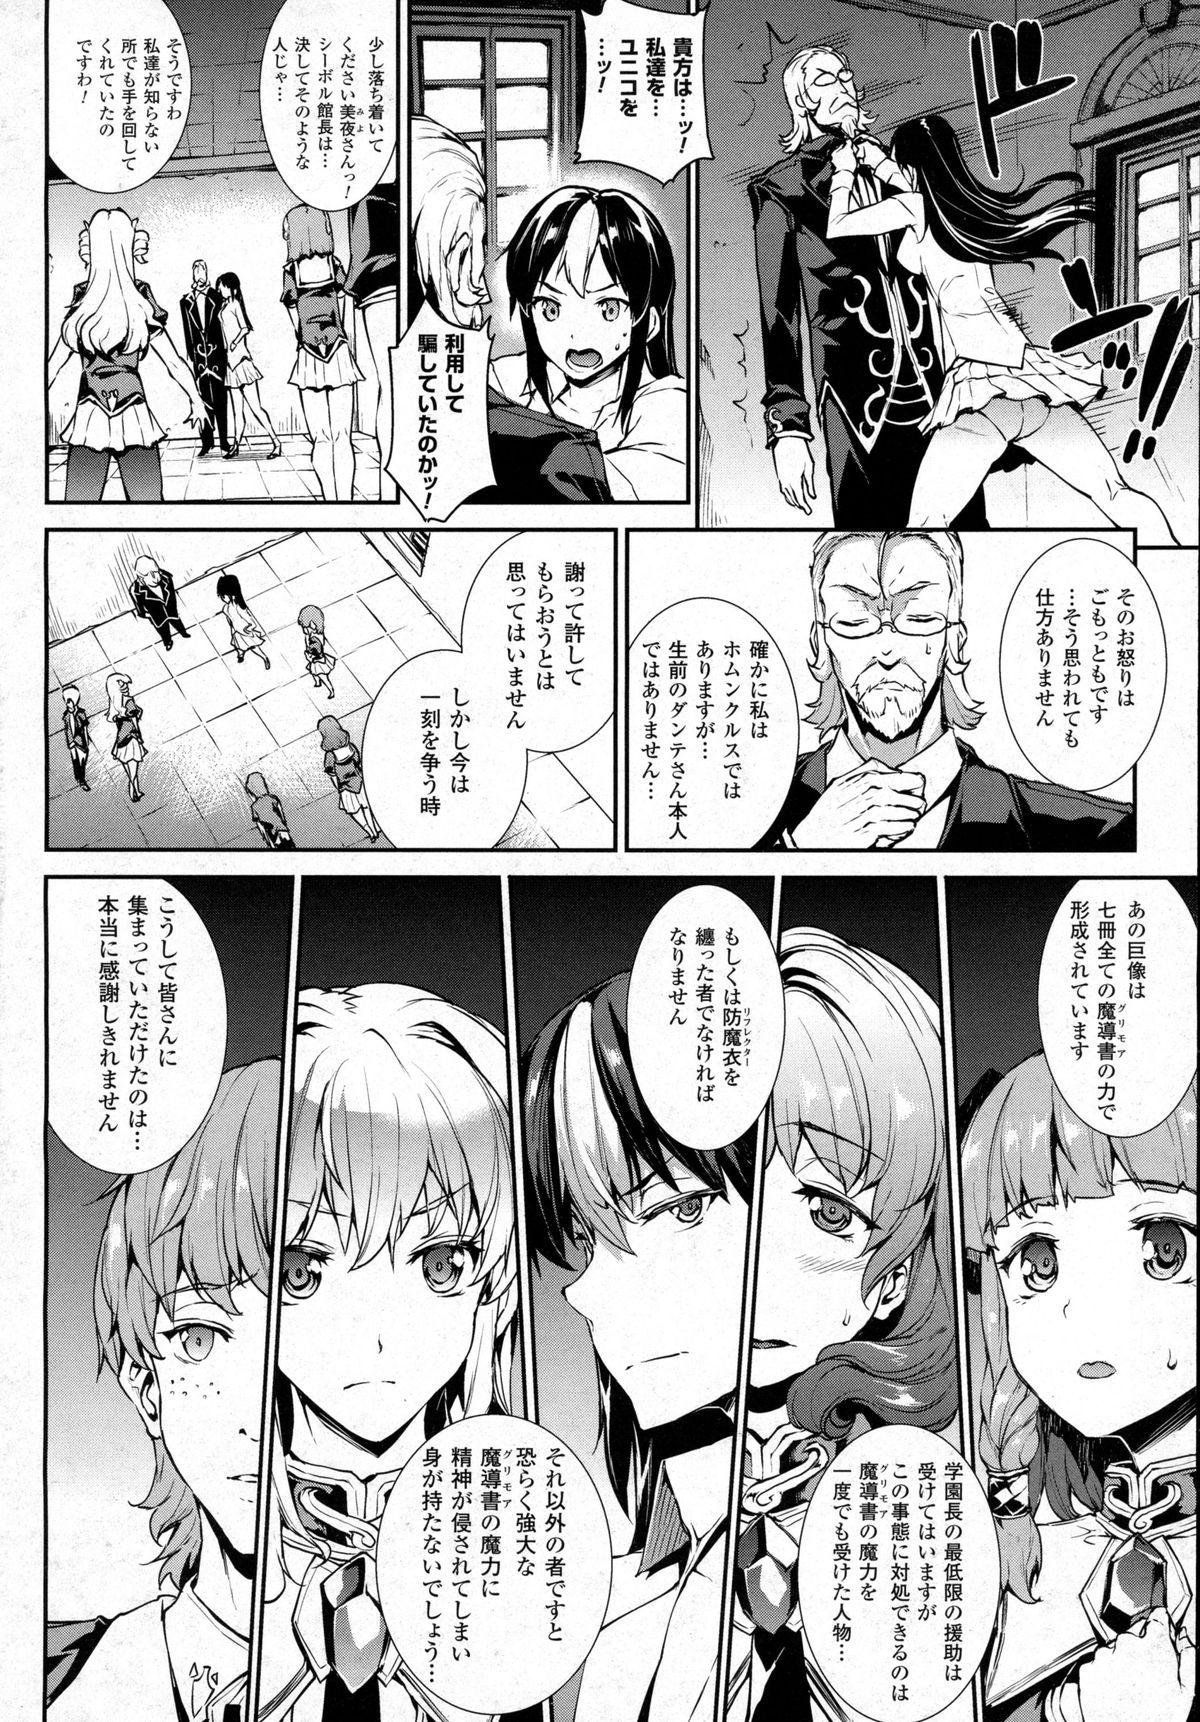 [Erect Sawaru] Shinkyoku no Grimoire -PANDRA saga 2nd story- CH 13-20 138